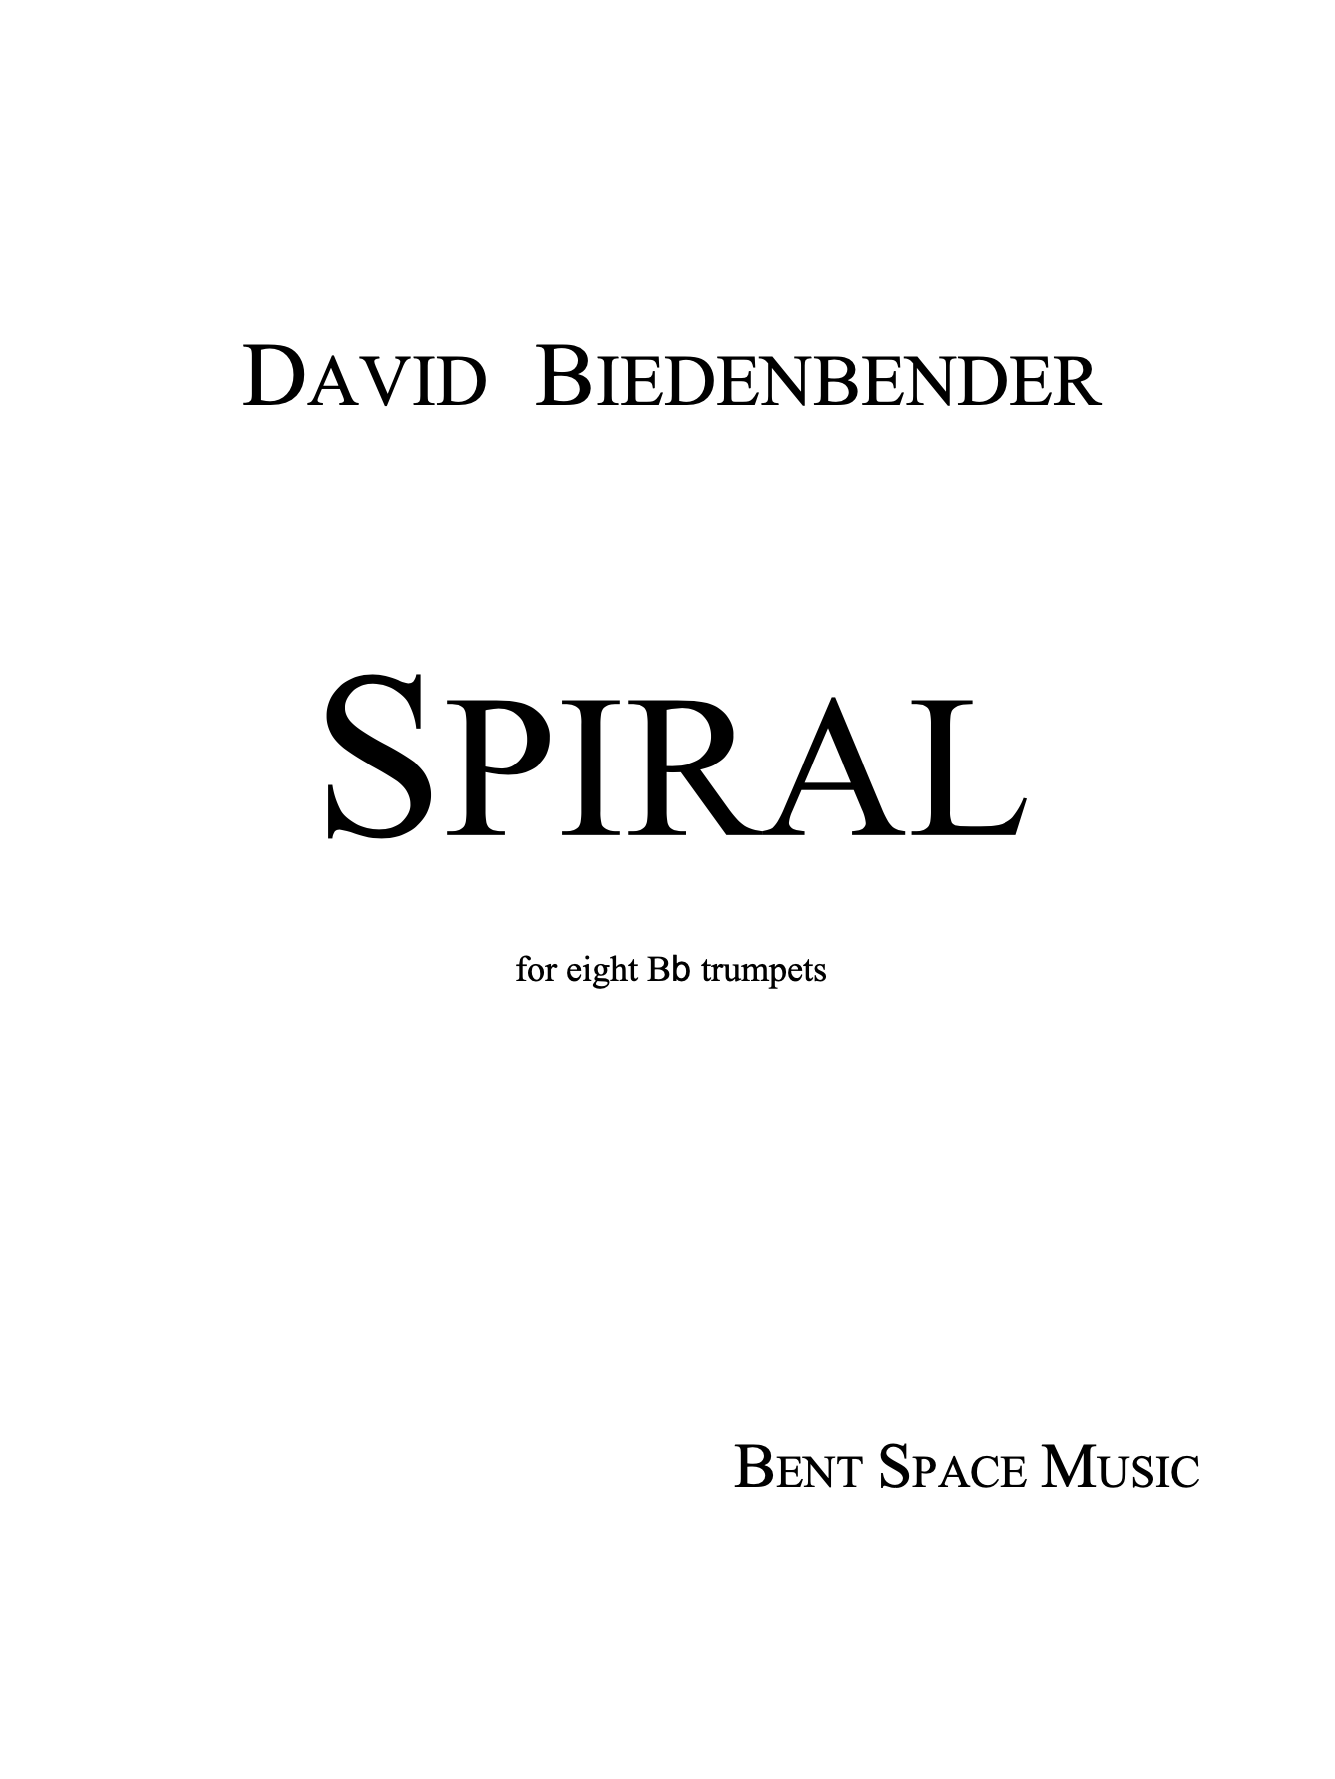 Spiral by David Biedenbender